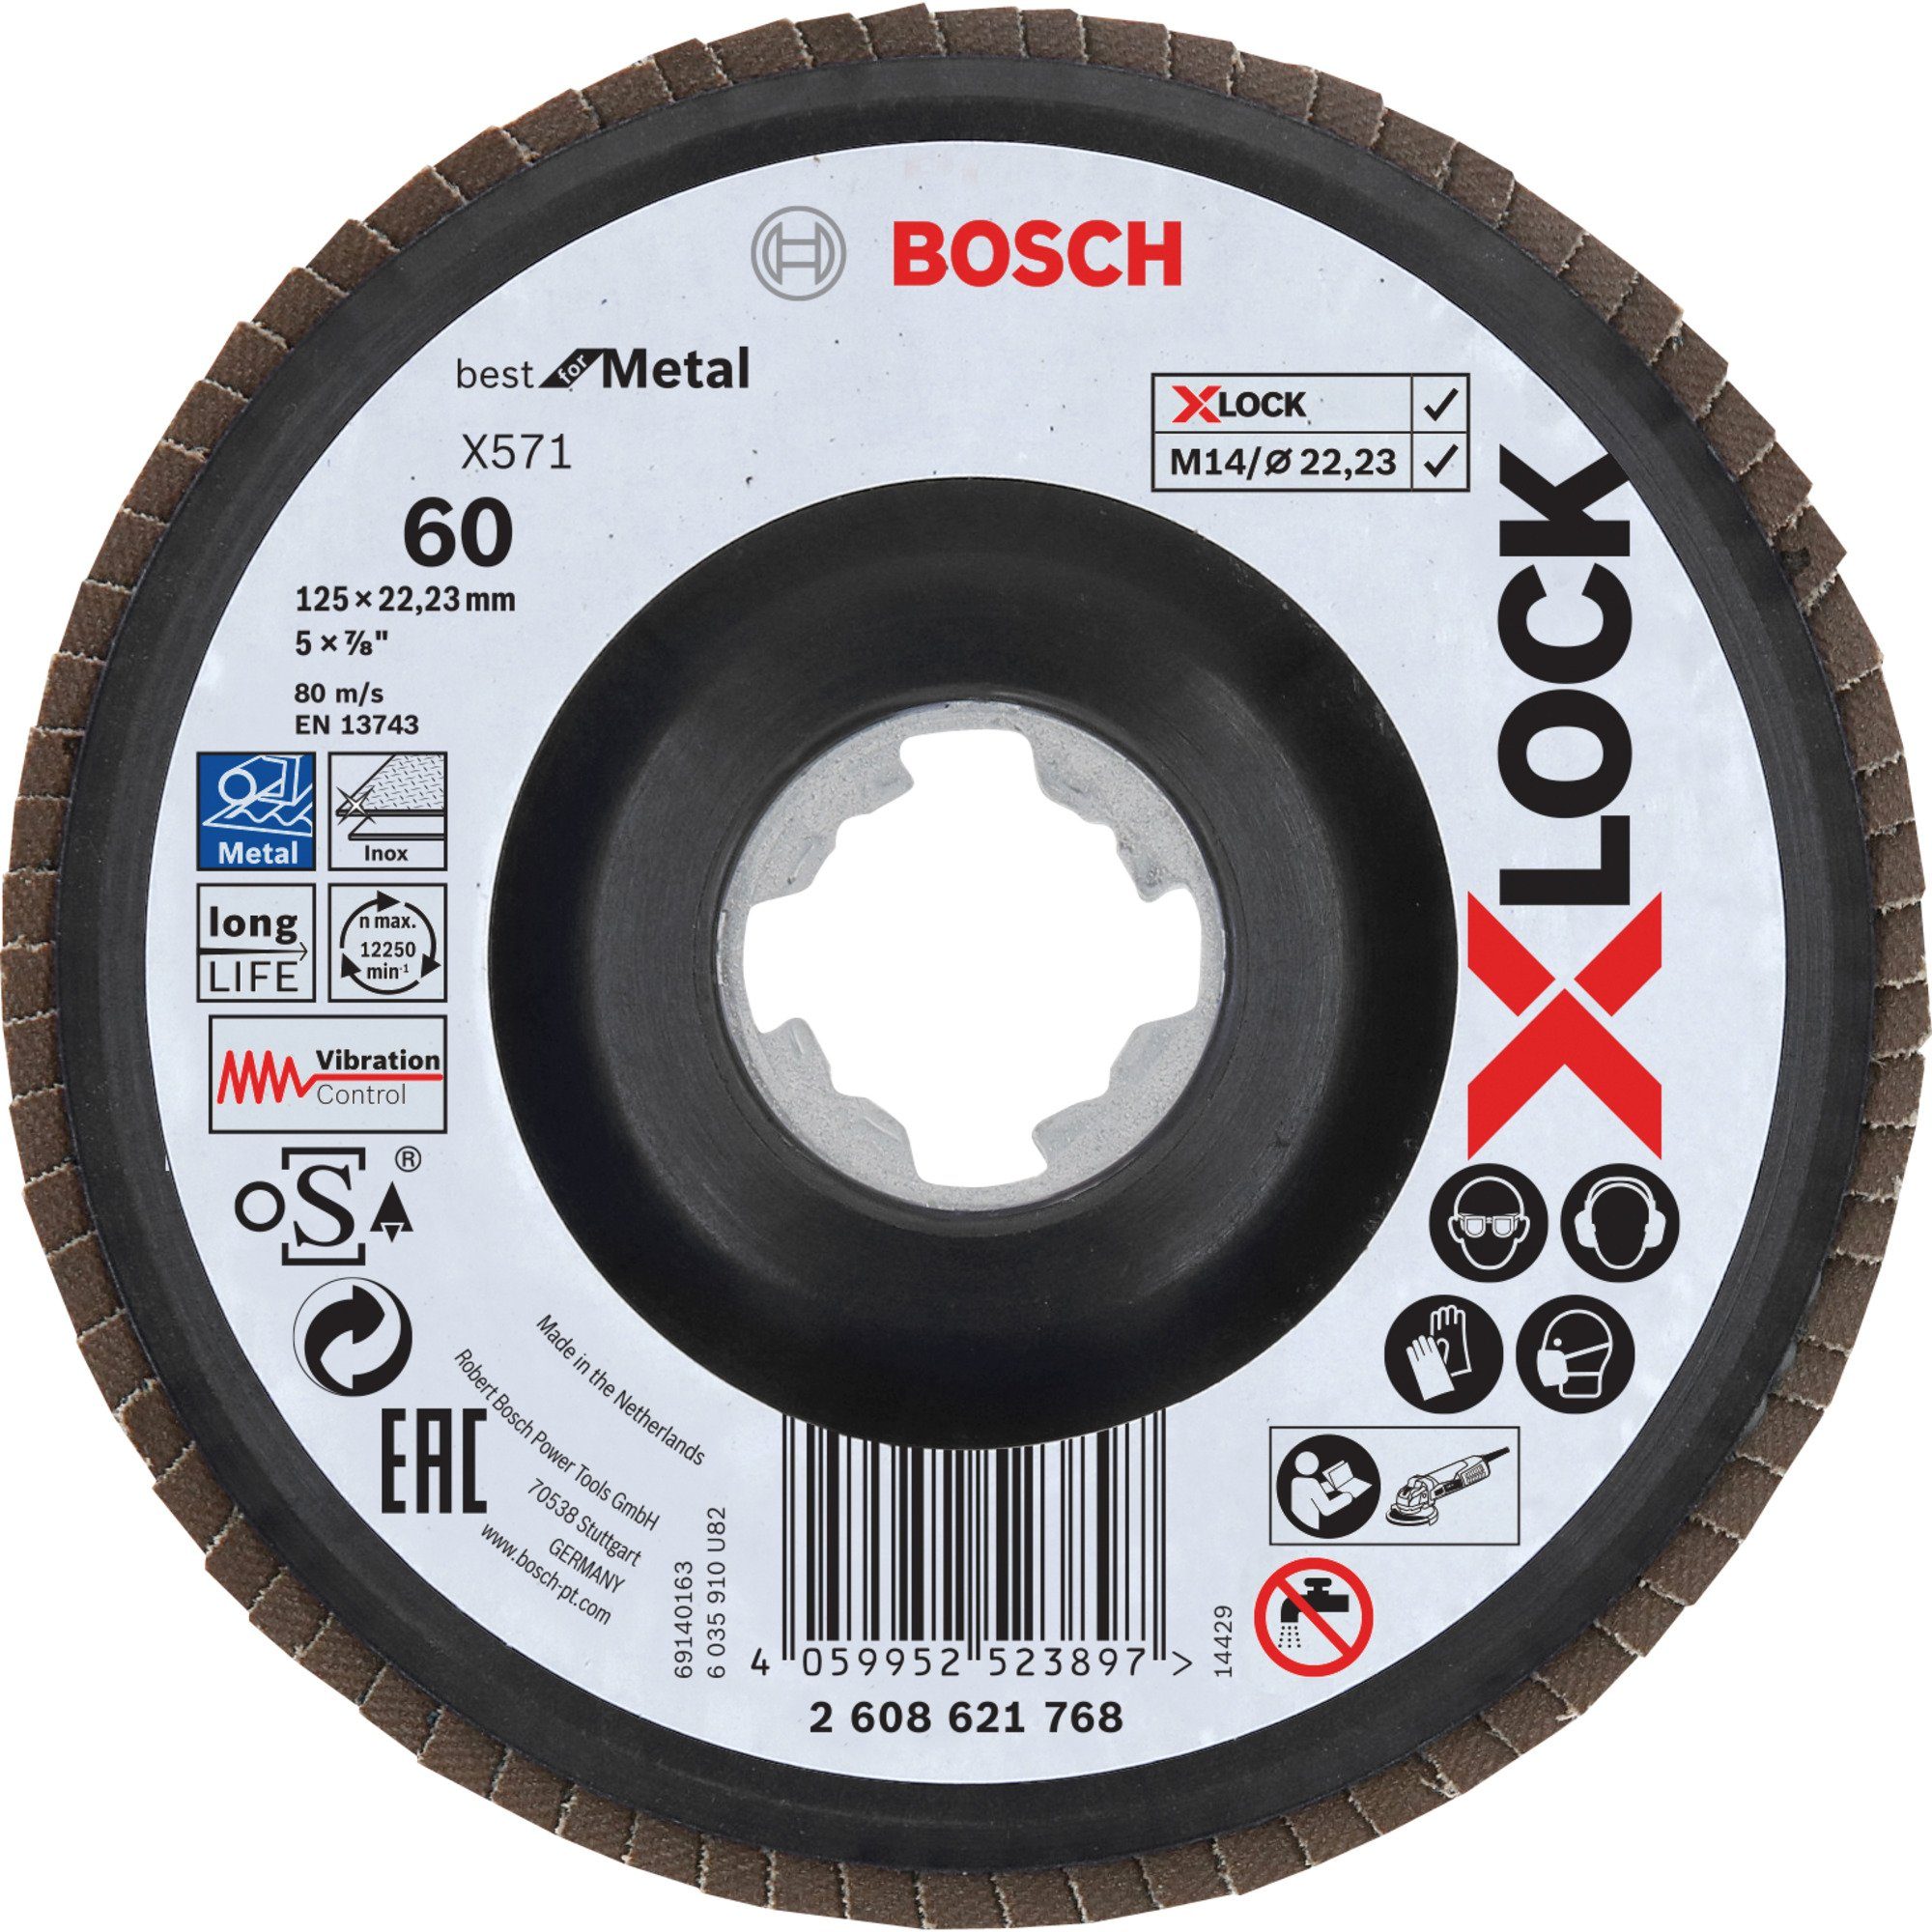 Beliebtheit der Lieferung per Nachnahme BOSCH Schleifscheibe Bosch Professional X-LOCK X571 Fächerscheibe Best